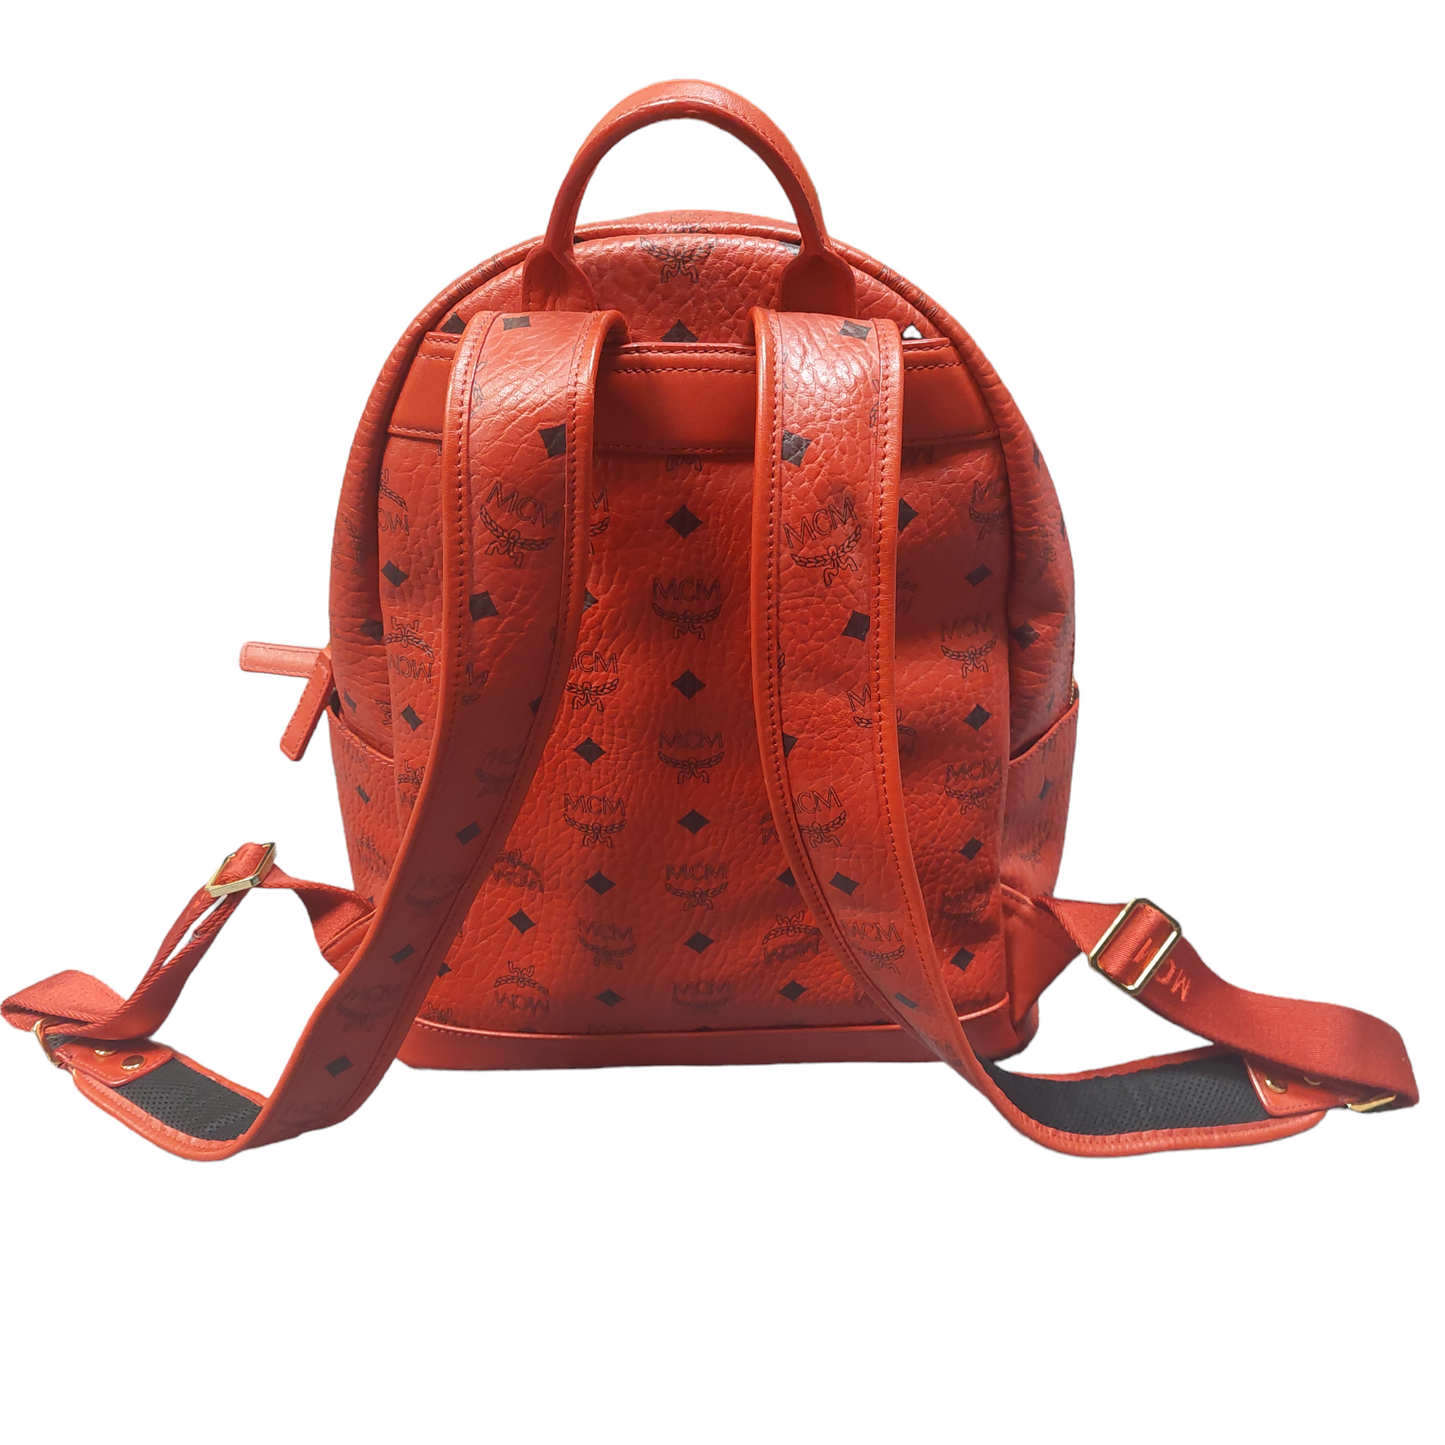 Backpack Designer By Mcm  Size: Medium